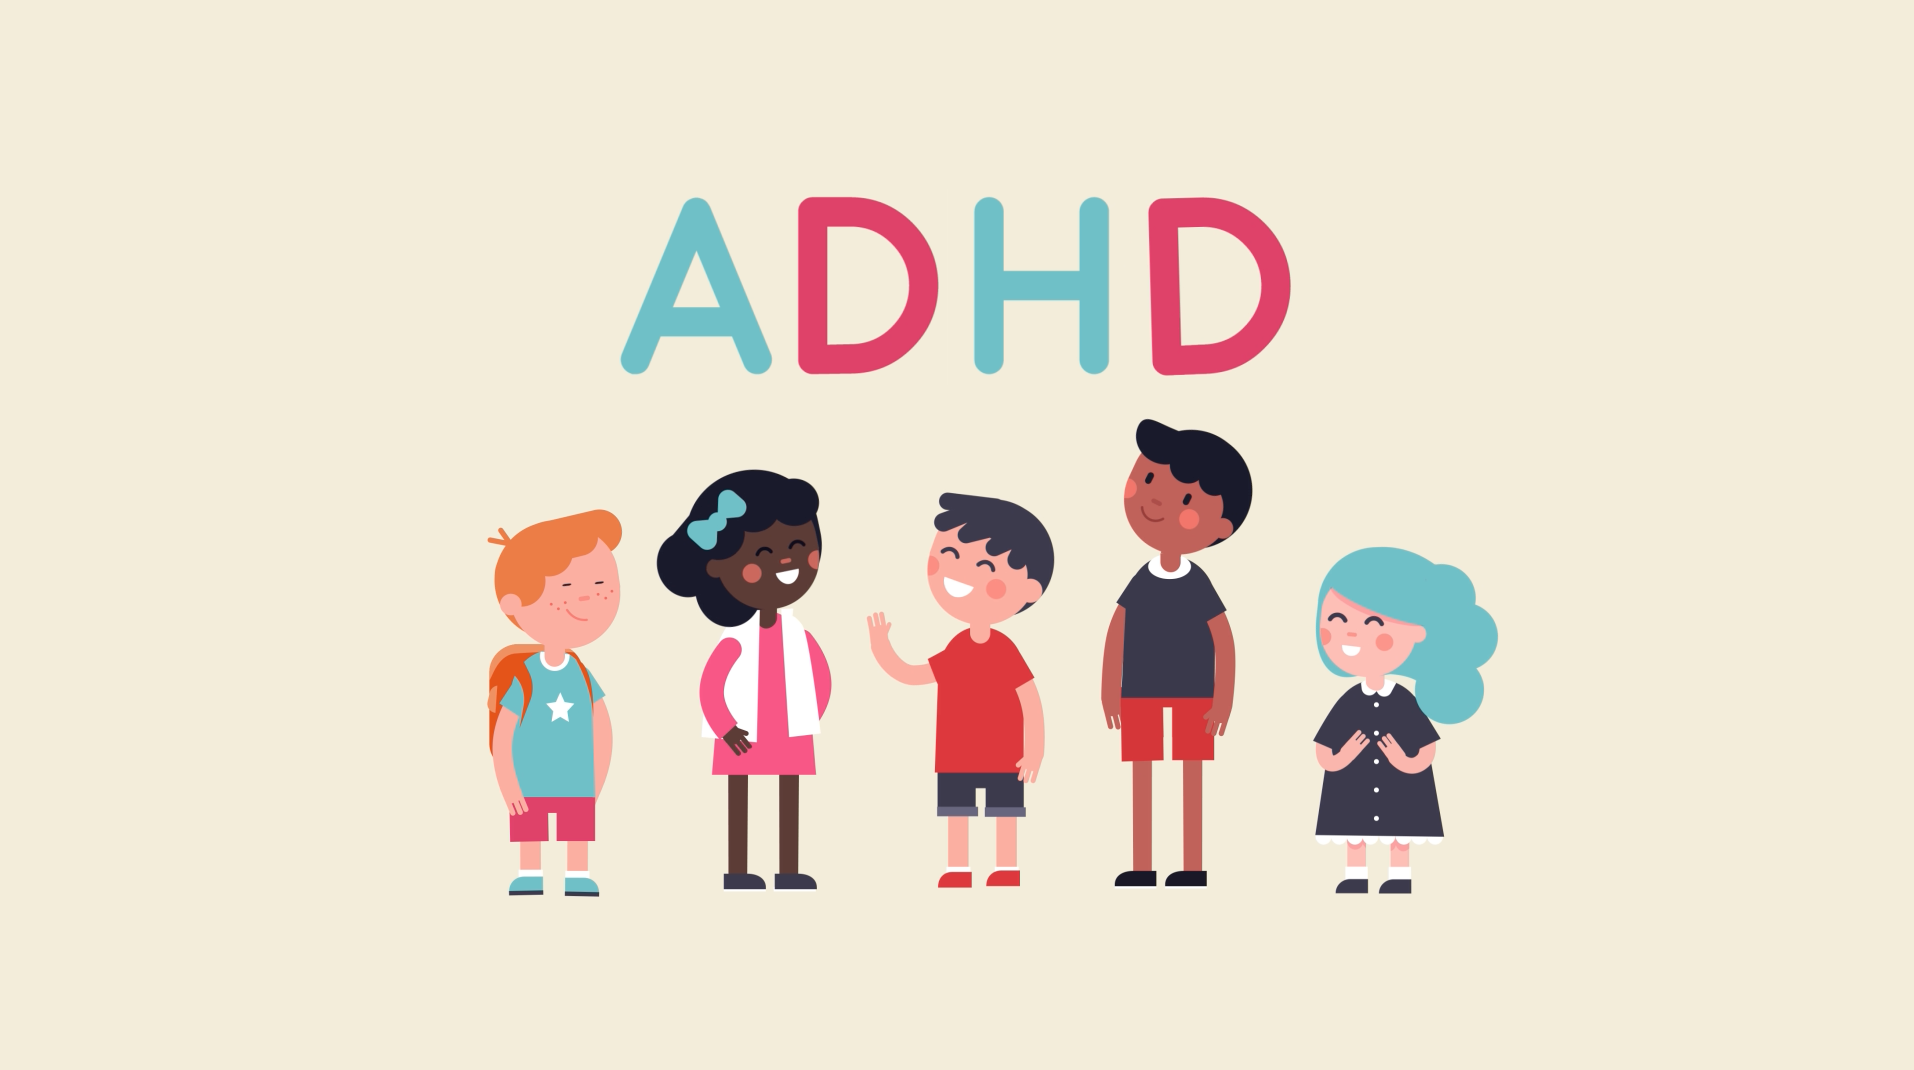 Chế độ ăn uống lành mạnh có thể giúp trẻ ADHD tăng sự tập trung